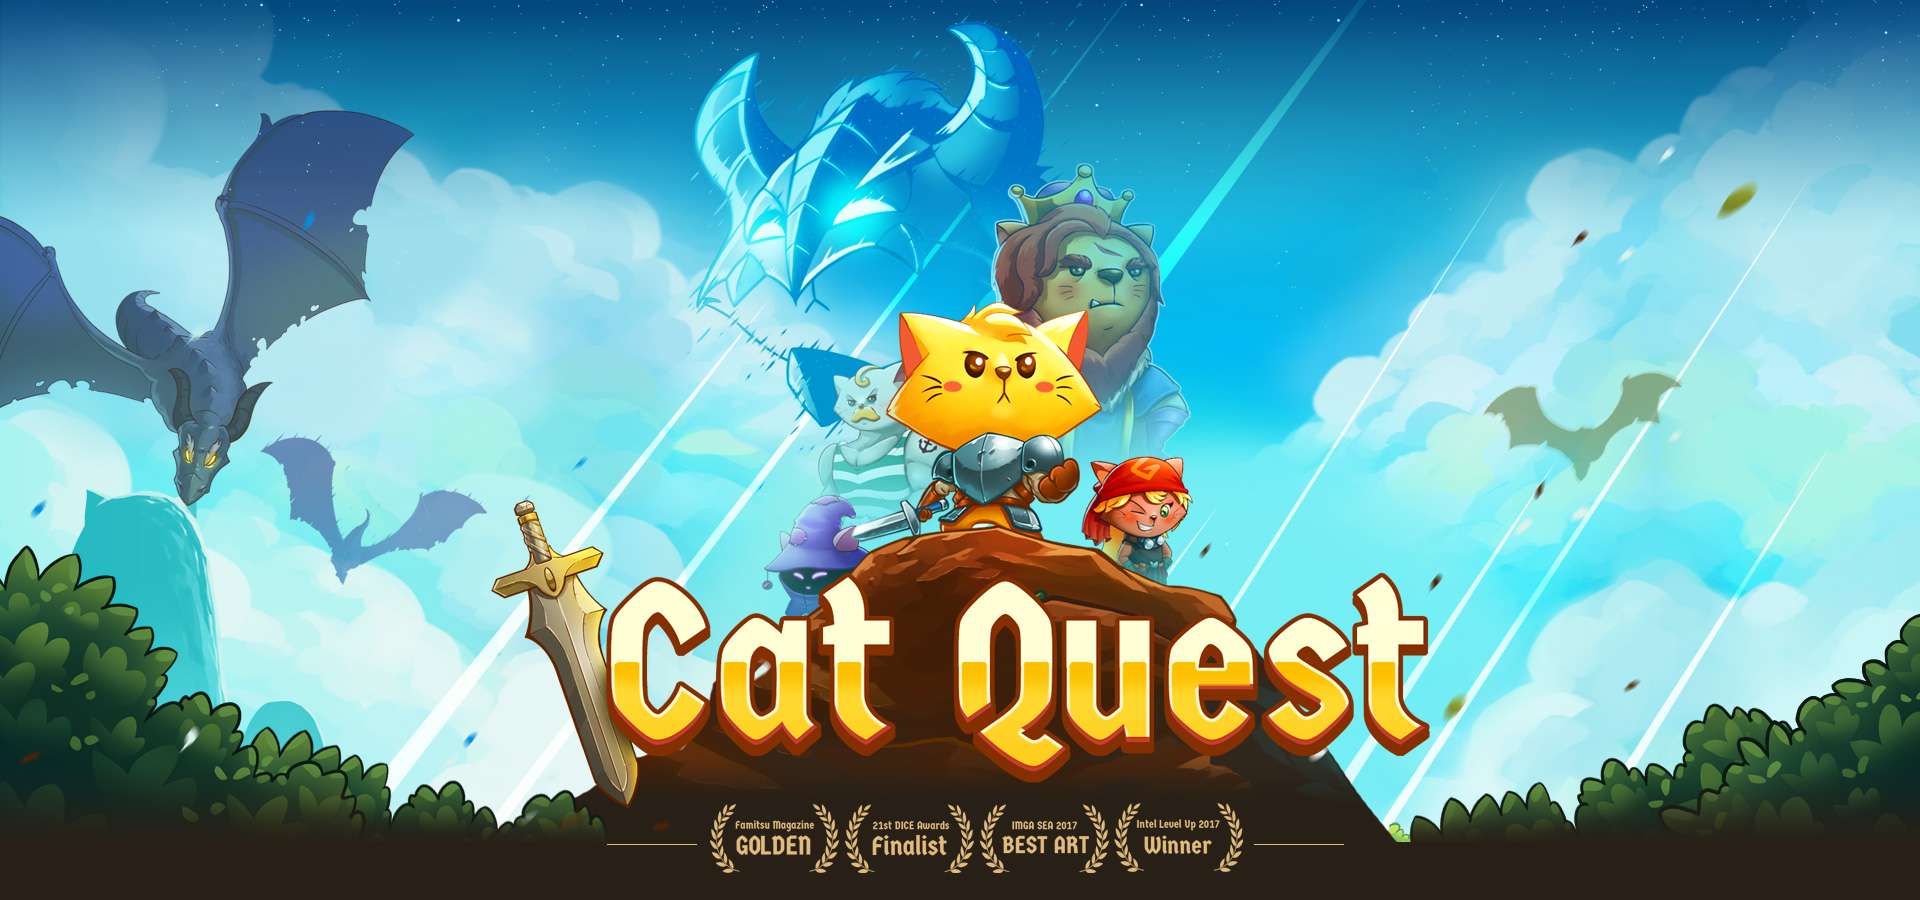 Cat Quest, czyli miautastyczna podróż.